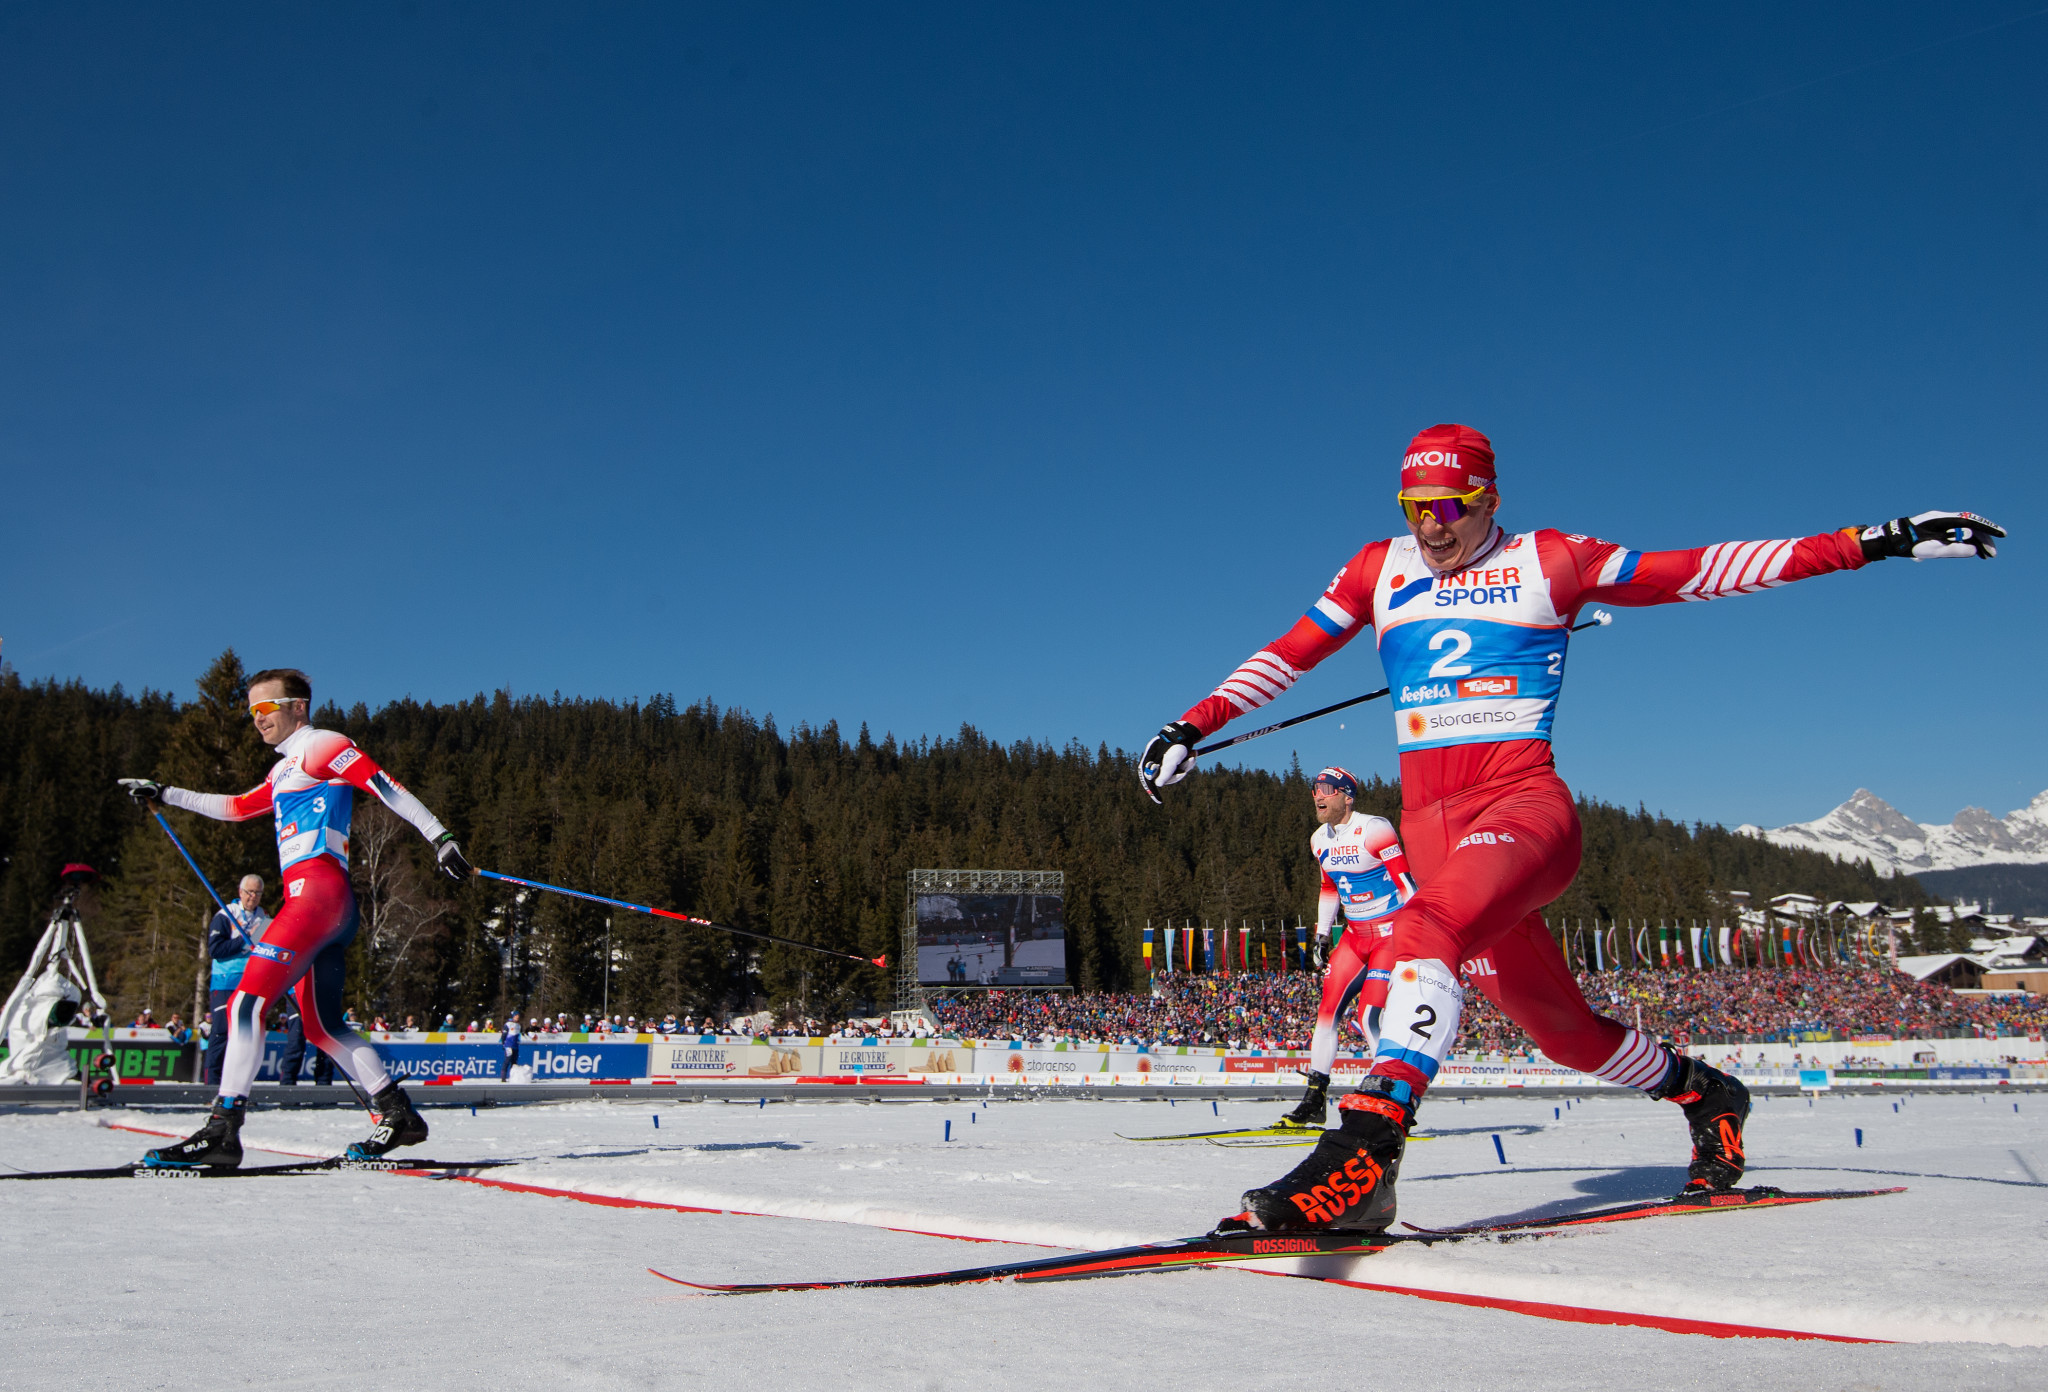 Следующий этап кубка. Лиллехаммер 2017-2018 лыжные гонки. Лыжники спринт.